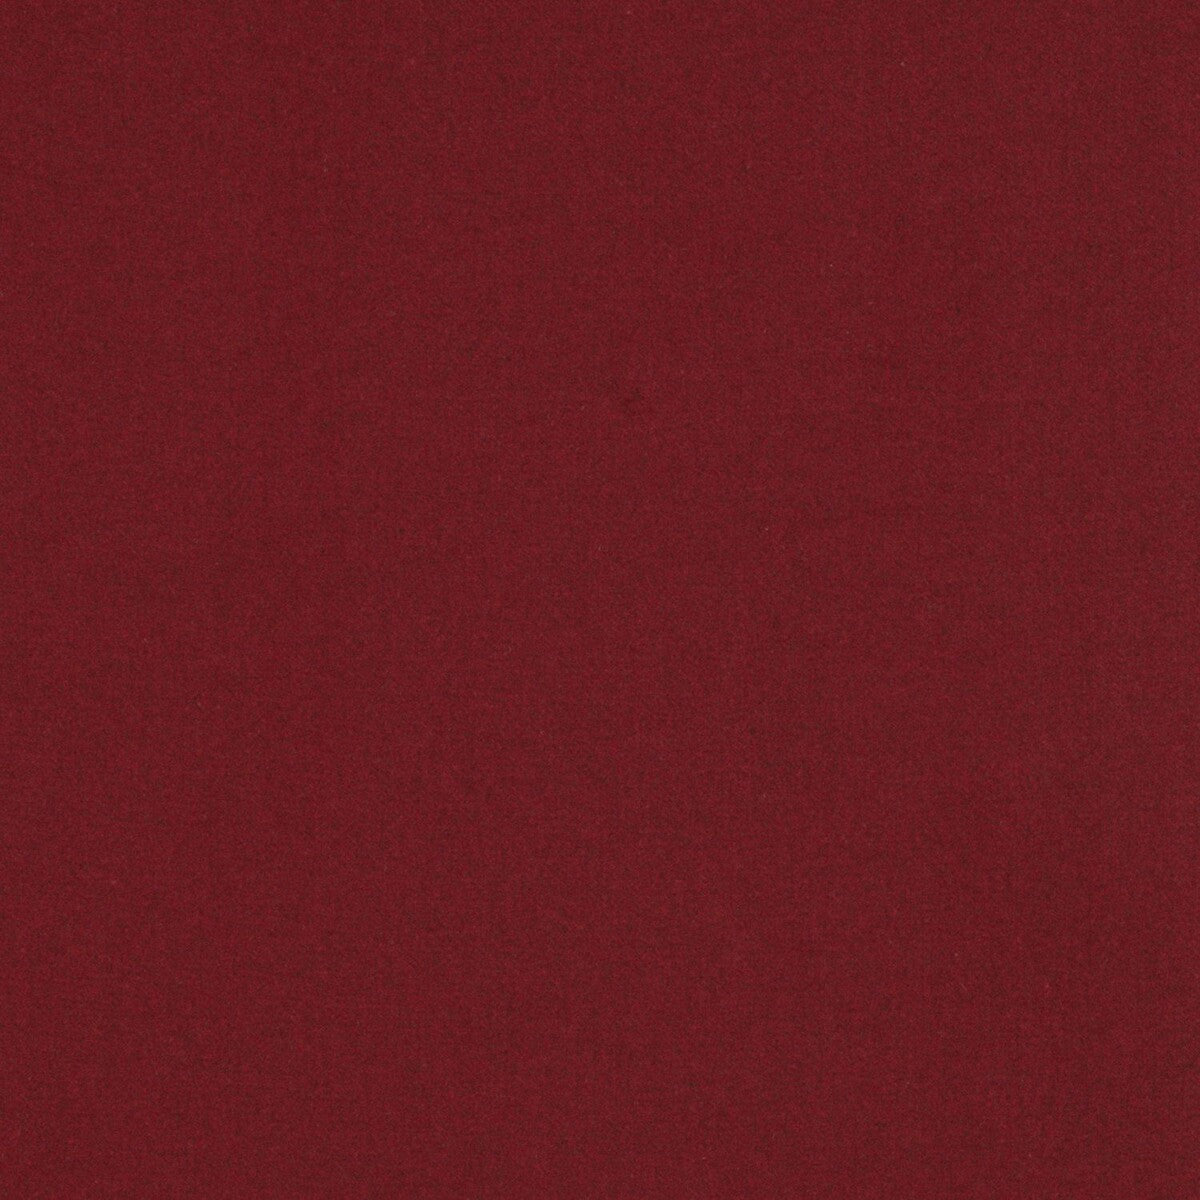 Wayne fabric in rojo color - pattern GDT5658.006.0 - by Gaston y Daniela in the Gaston Rio Grande collection